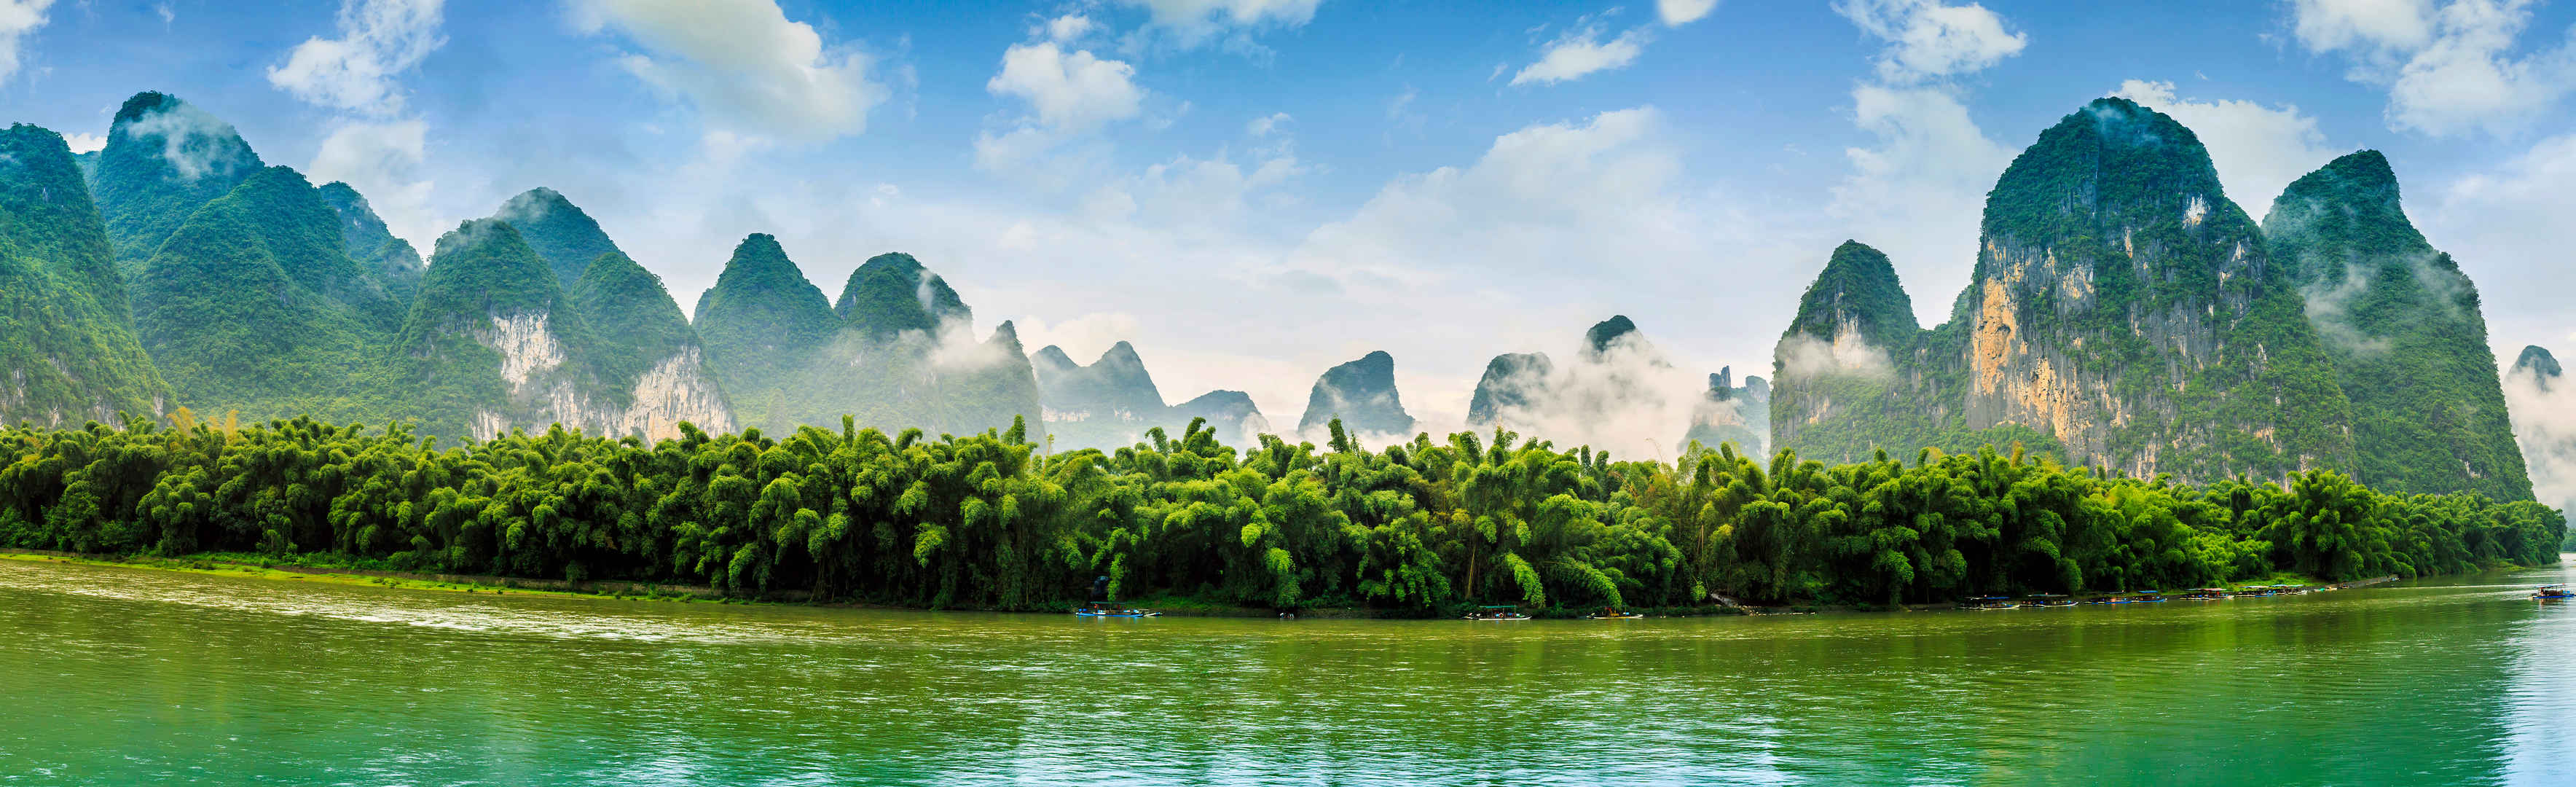 桂林美丽的自然景观宽屏壁纸-